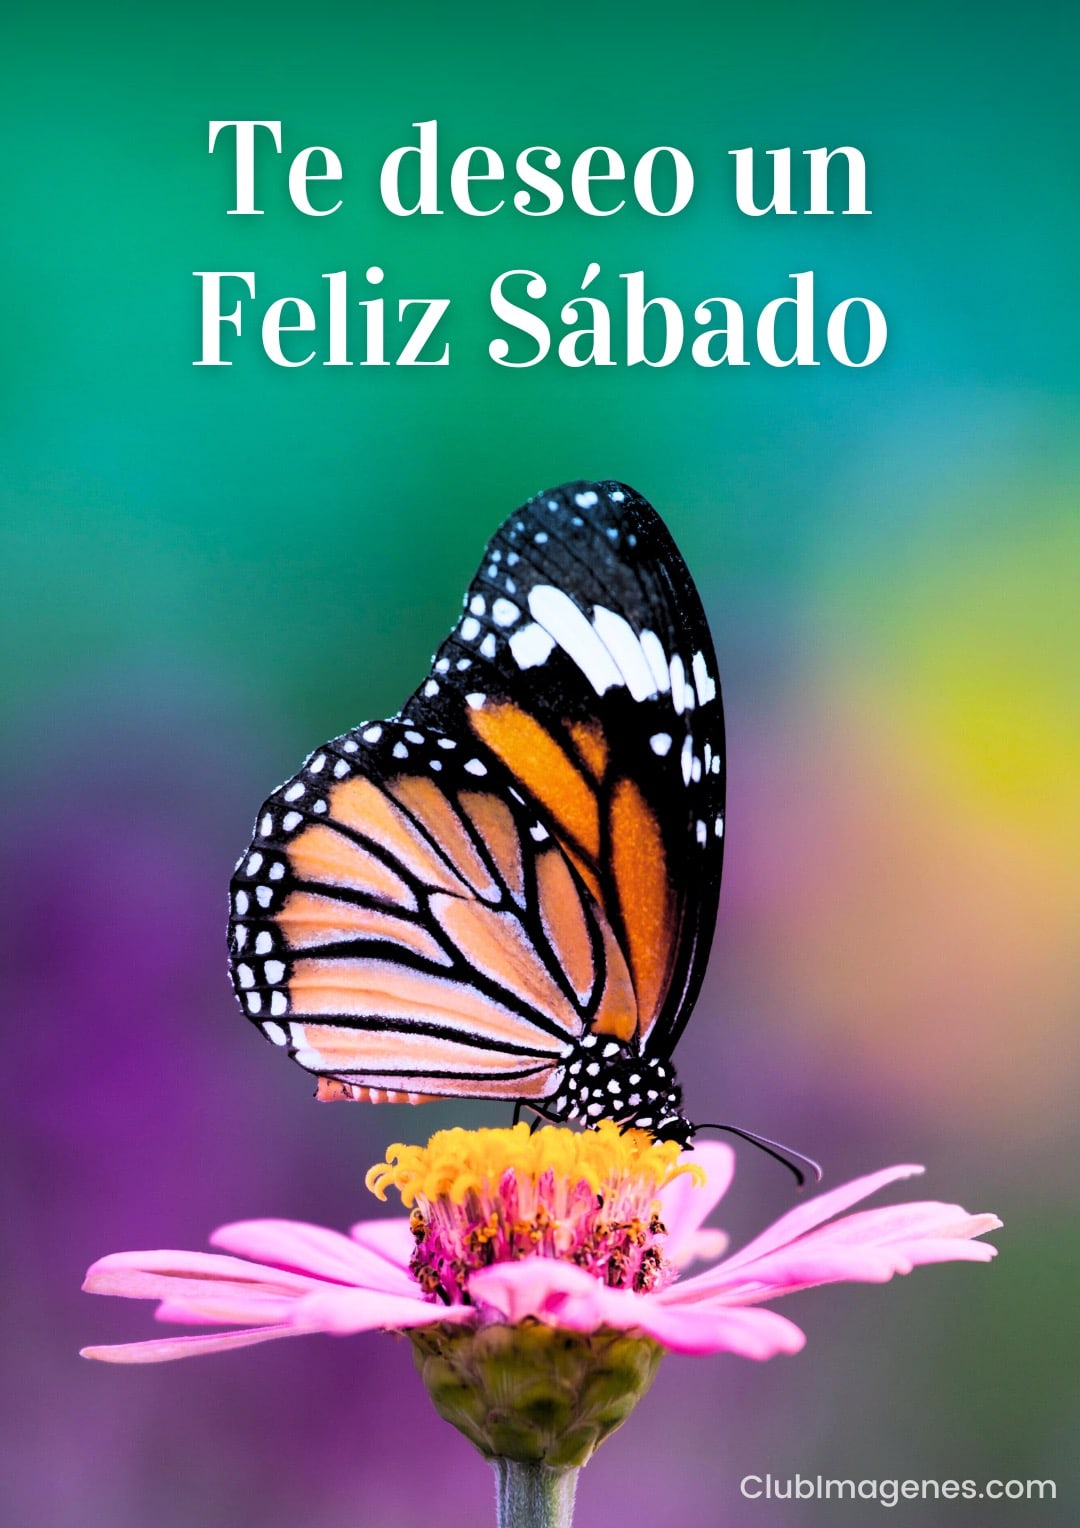 Mariposa monarca posada sobre una flor rosa con fondo verde y texto deseando un feliz sábado